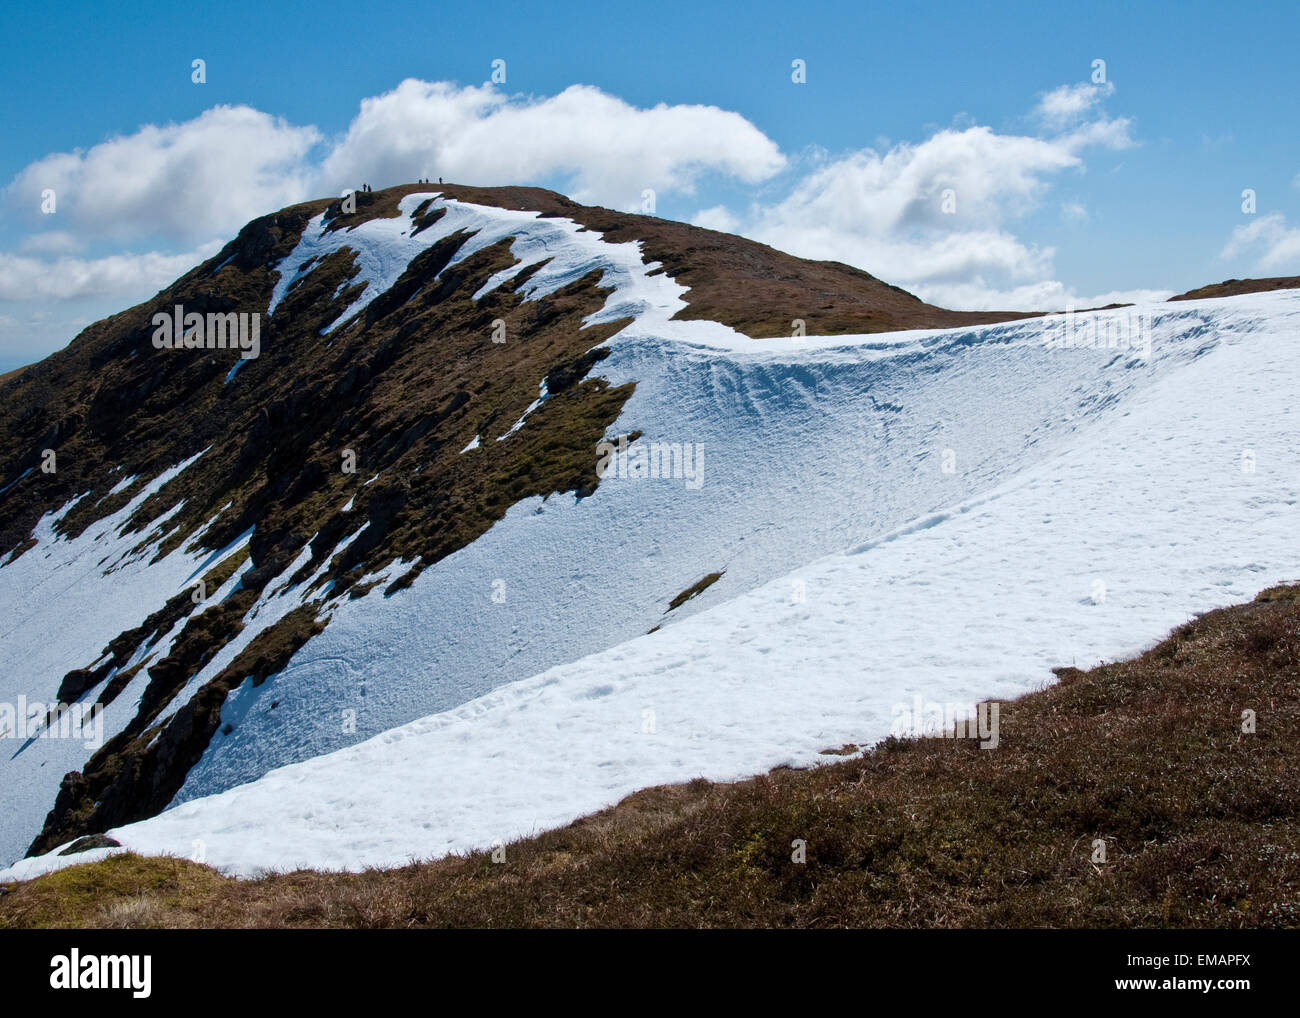 Il vertice di ben ledi montagna con neve sulla cresta. trossachs national park, SCOZIA Foto Stock